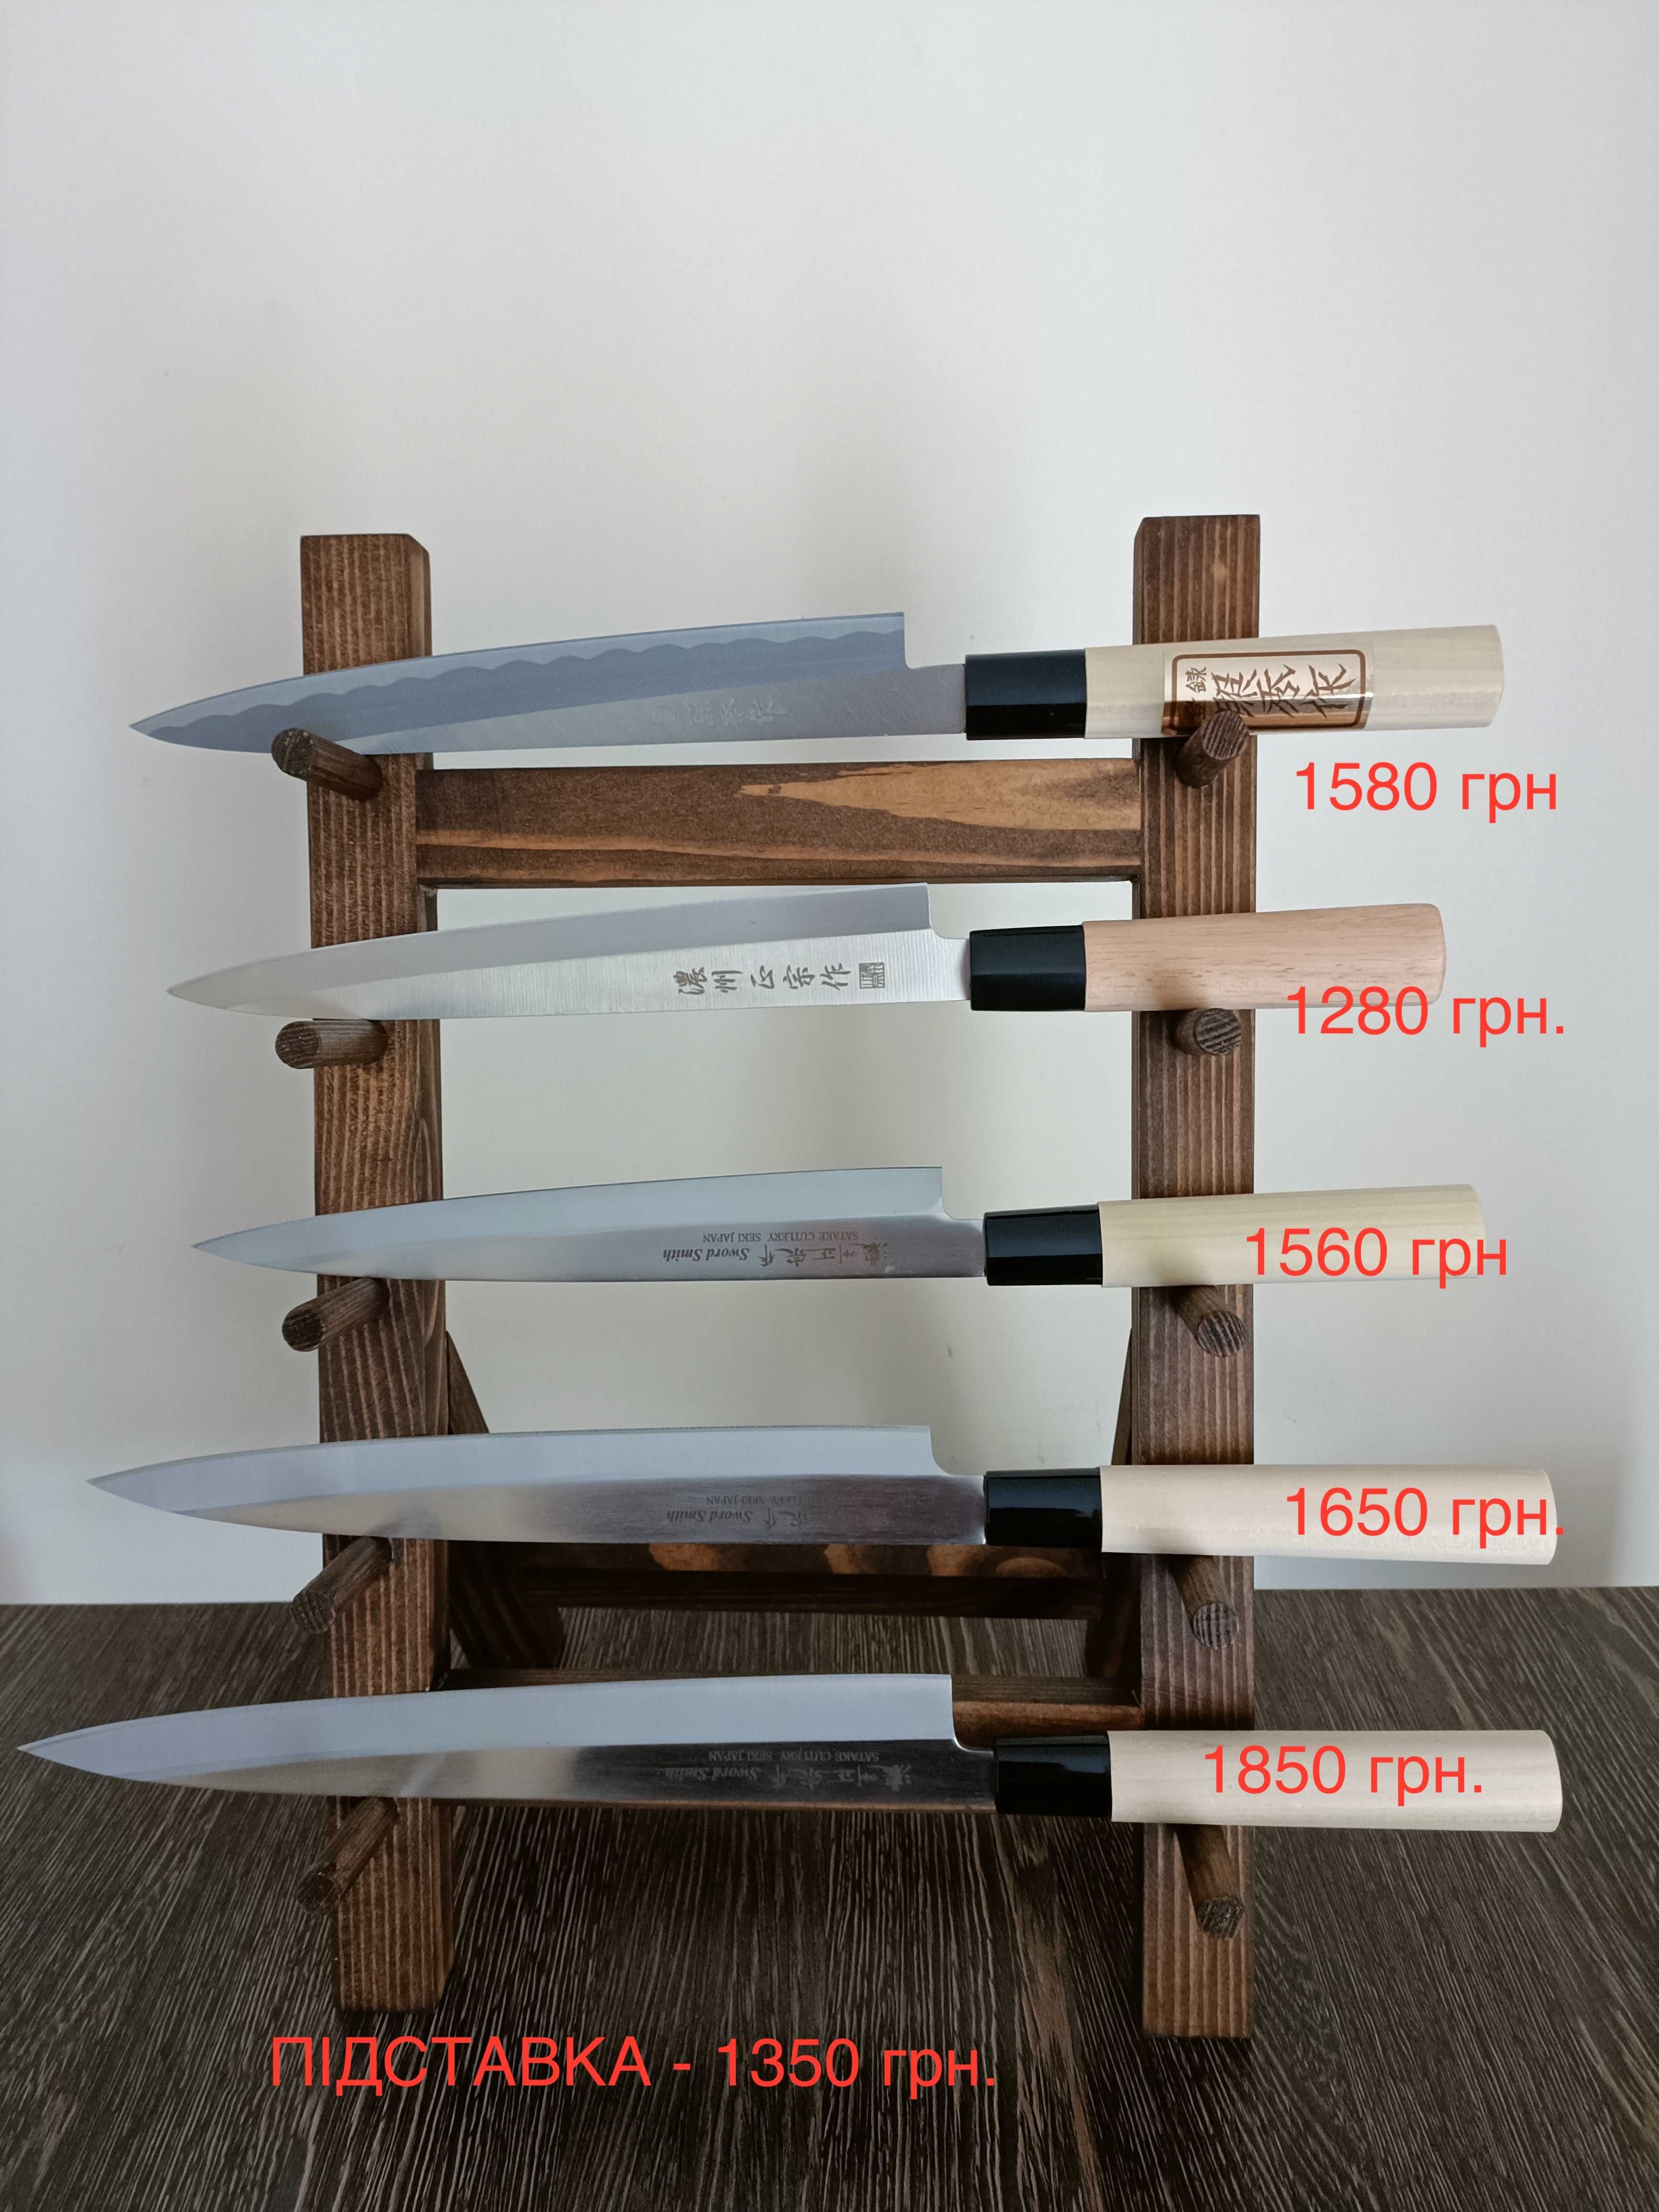 Японські ковані ножі Kai Sekimagoroku Imayo, Hammered